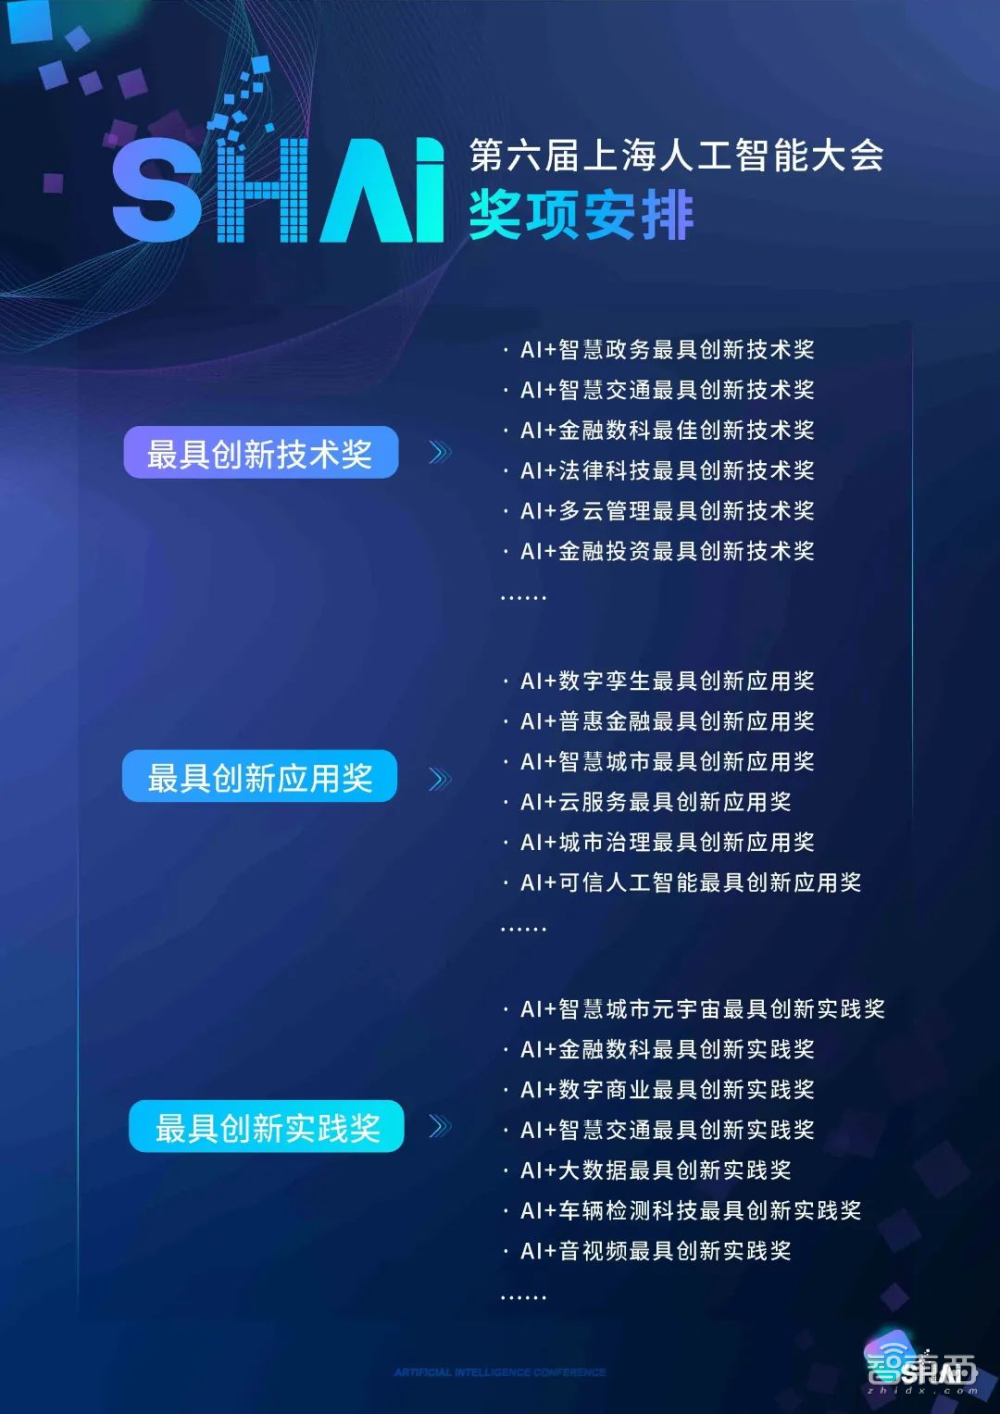 倒计时3天！2023第六届上海人工智能大会即将在上海盛大开幕